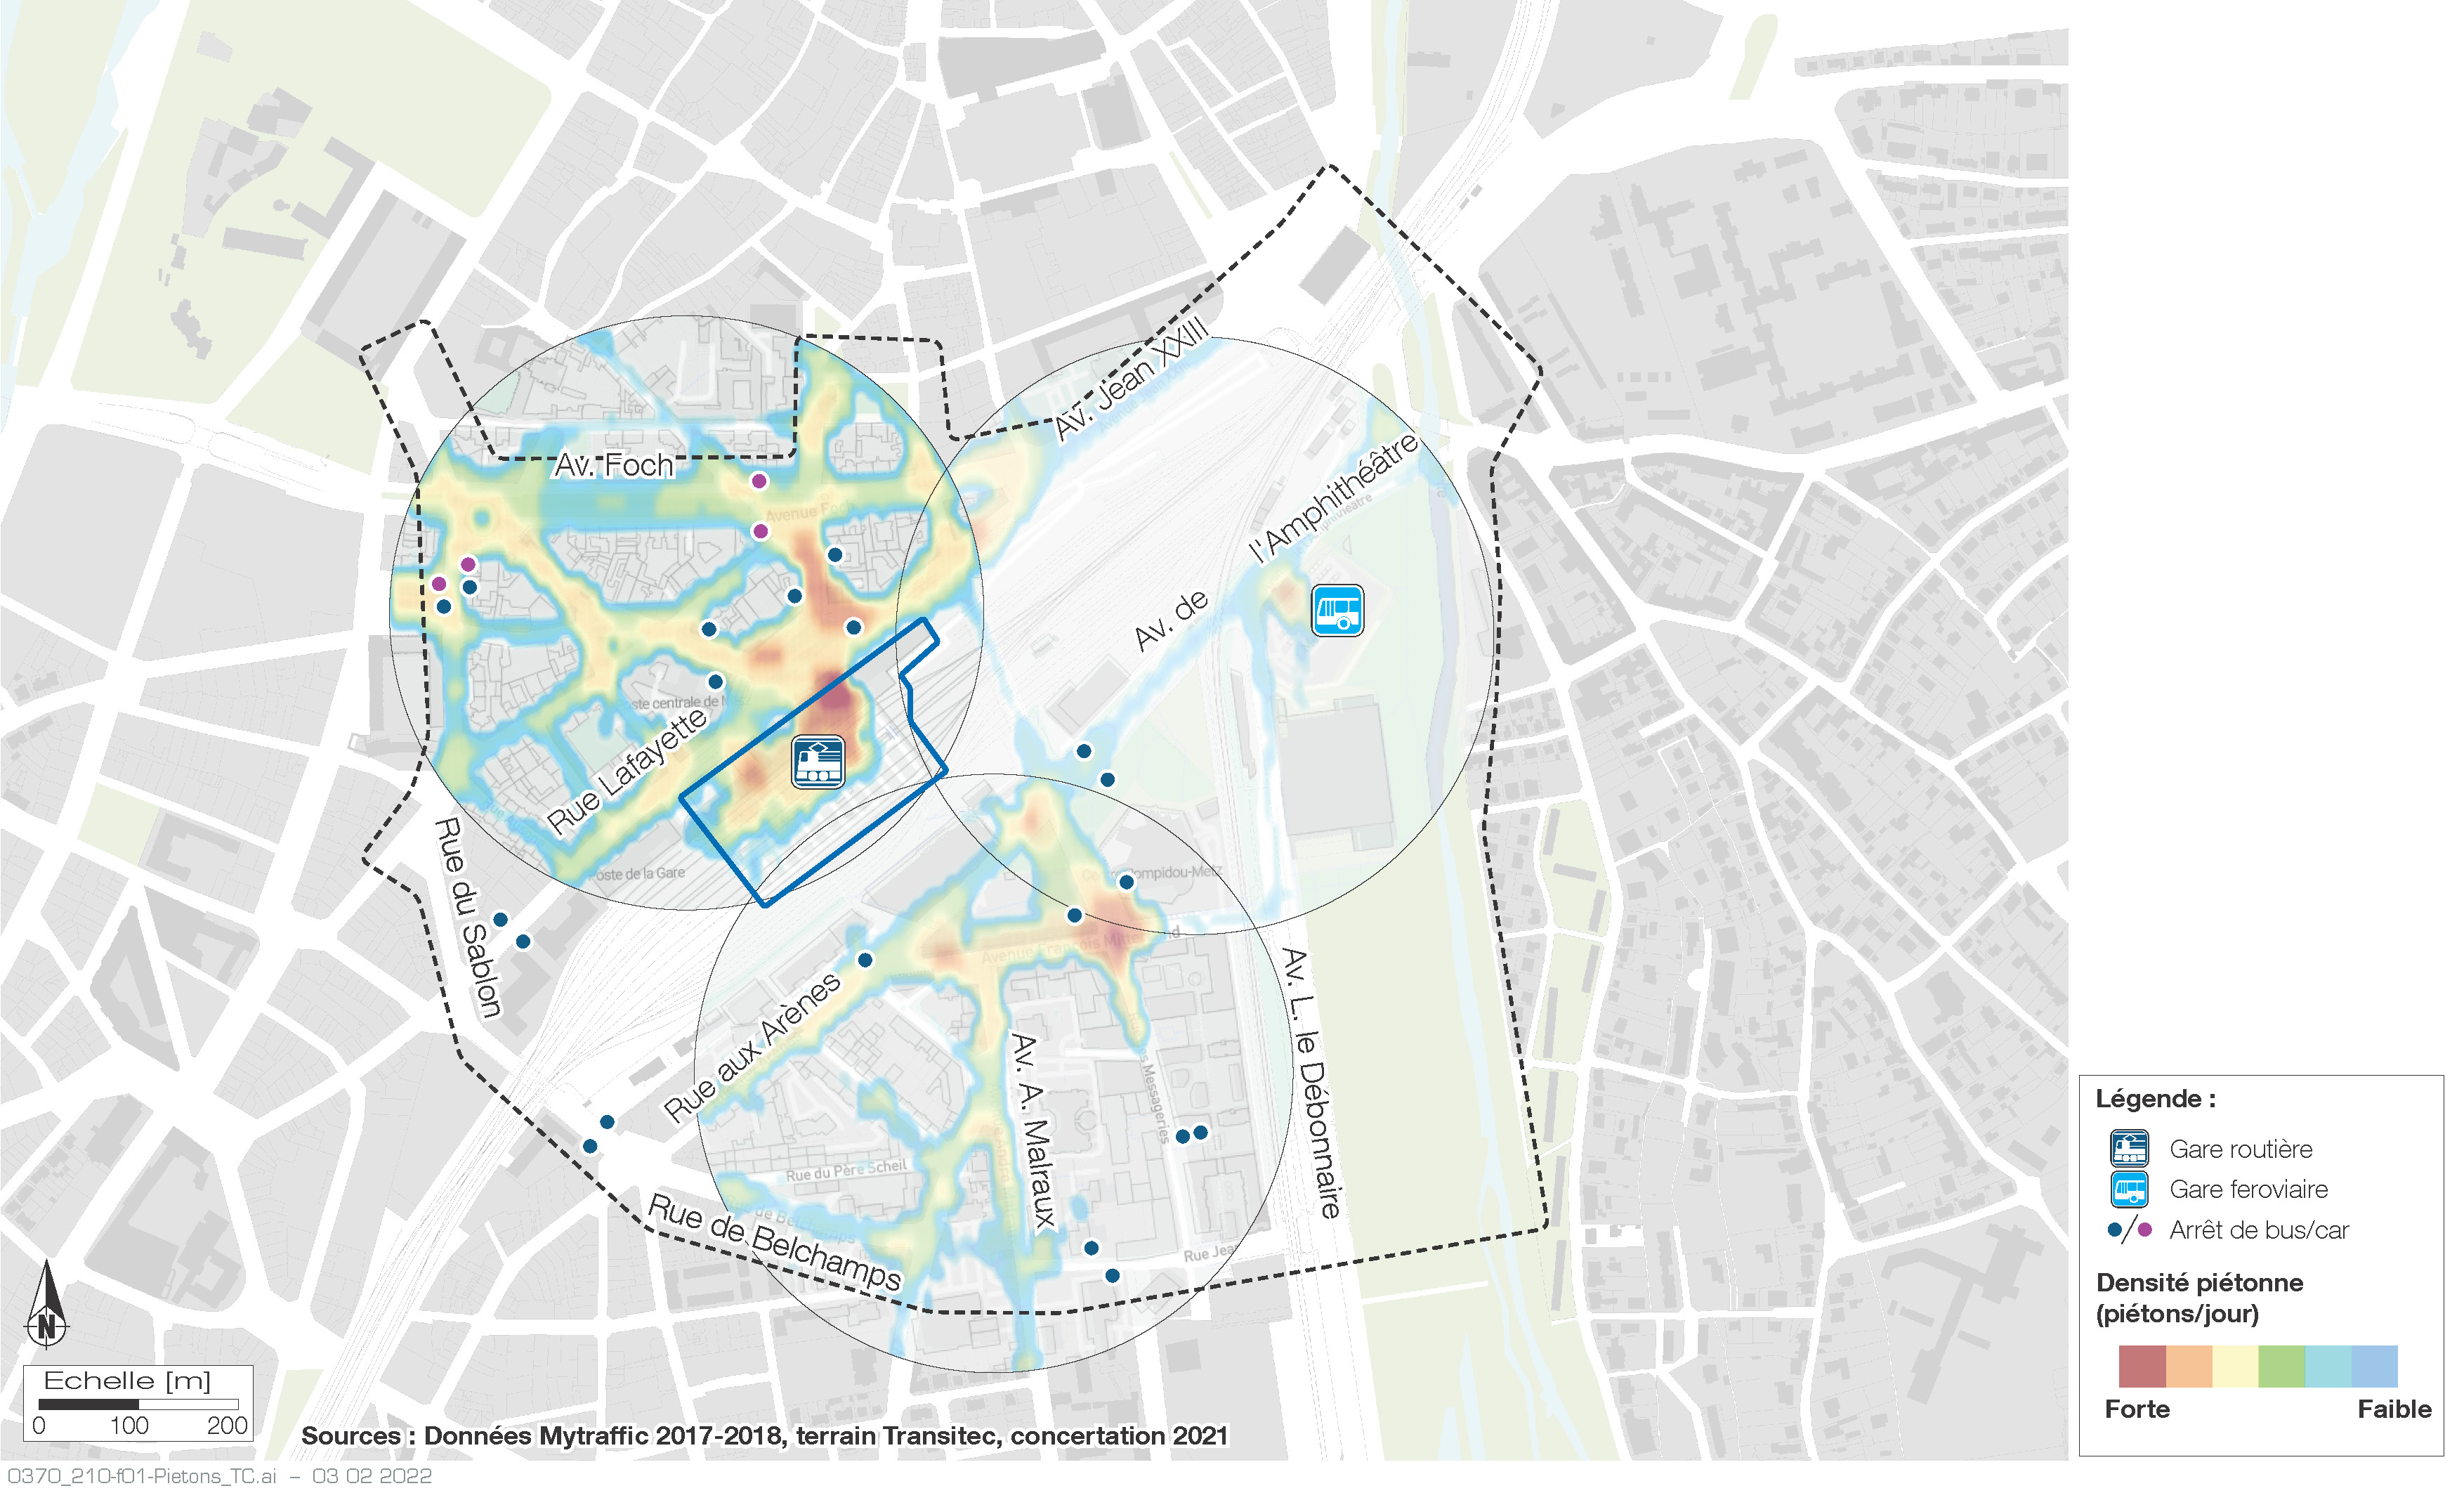 Metz Urban Mobility 2030 - Définition d’un projet urbain sur le secteur gare de la ville de Metz